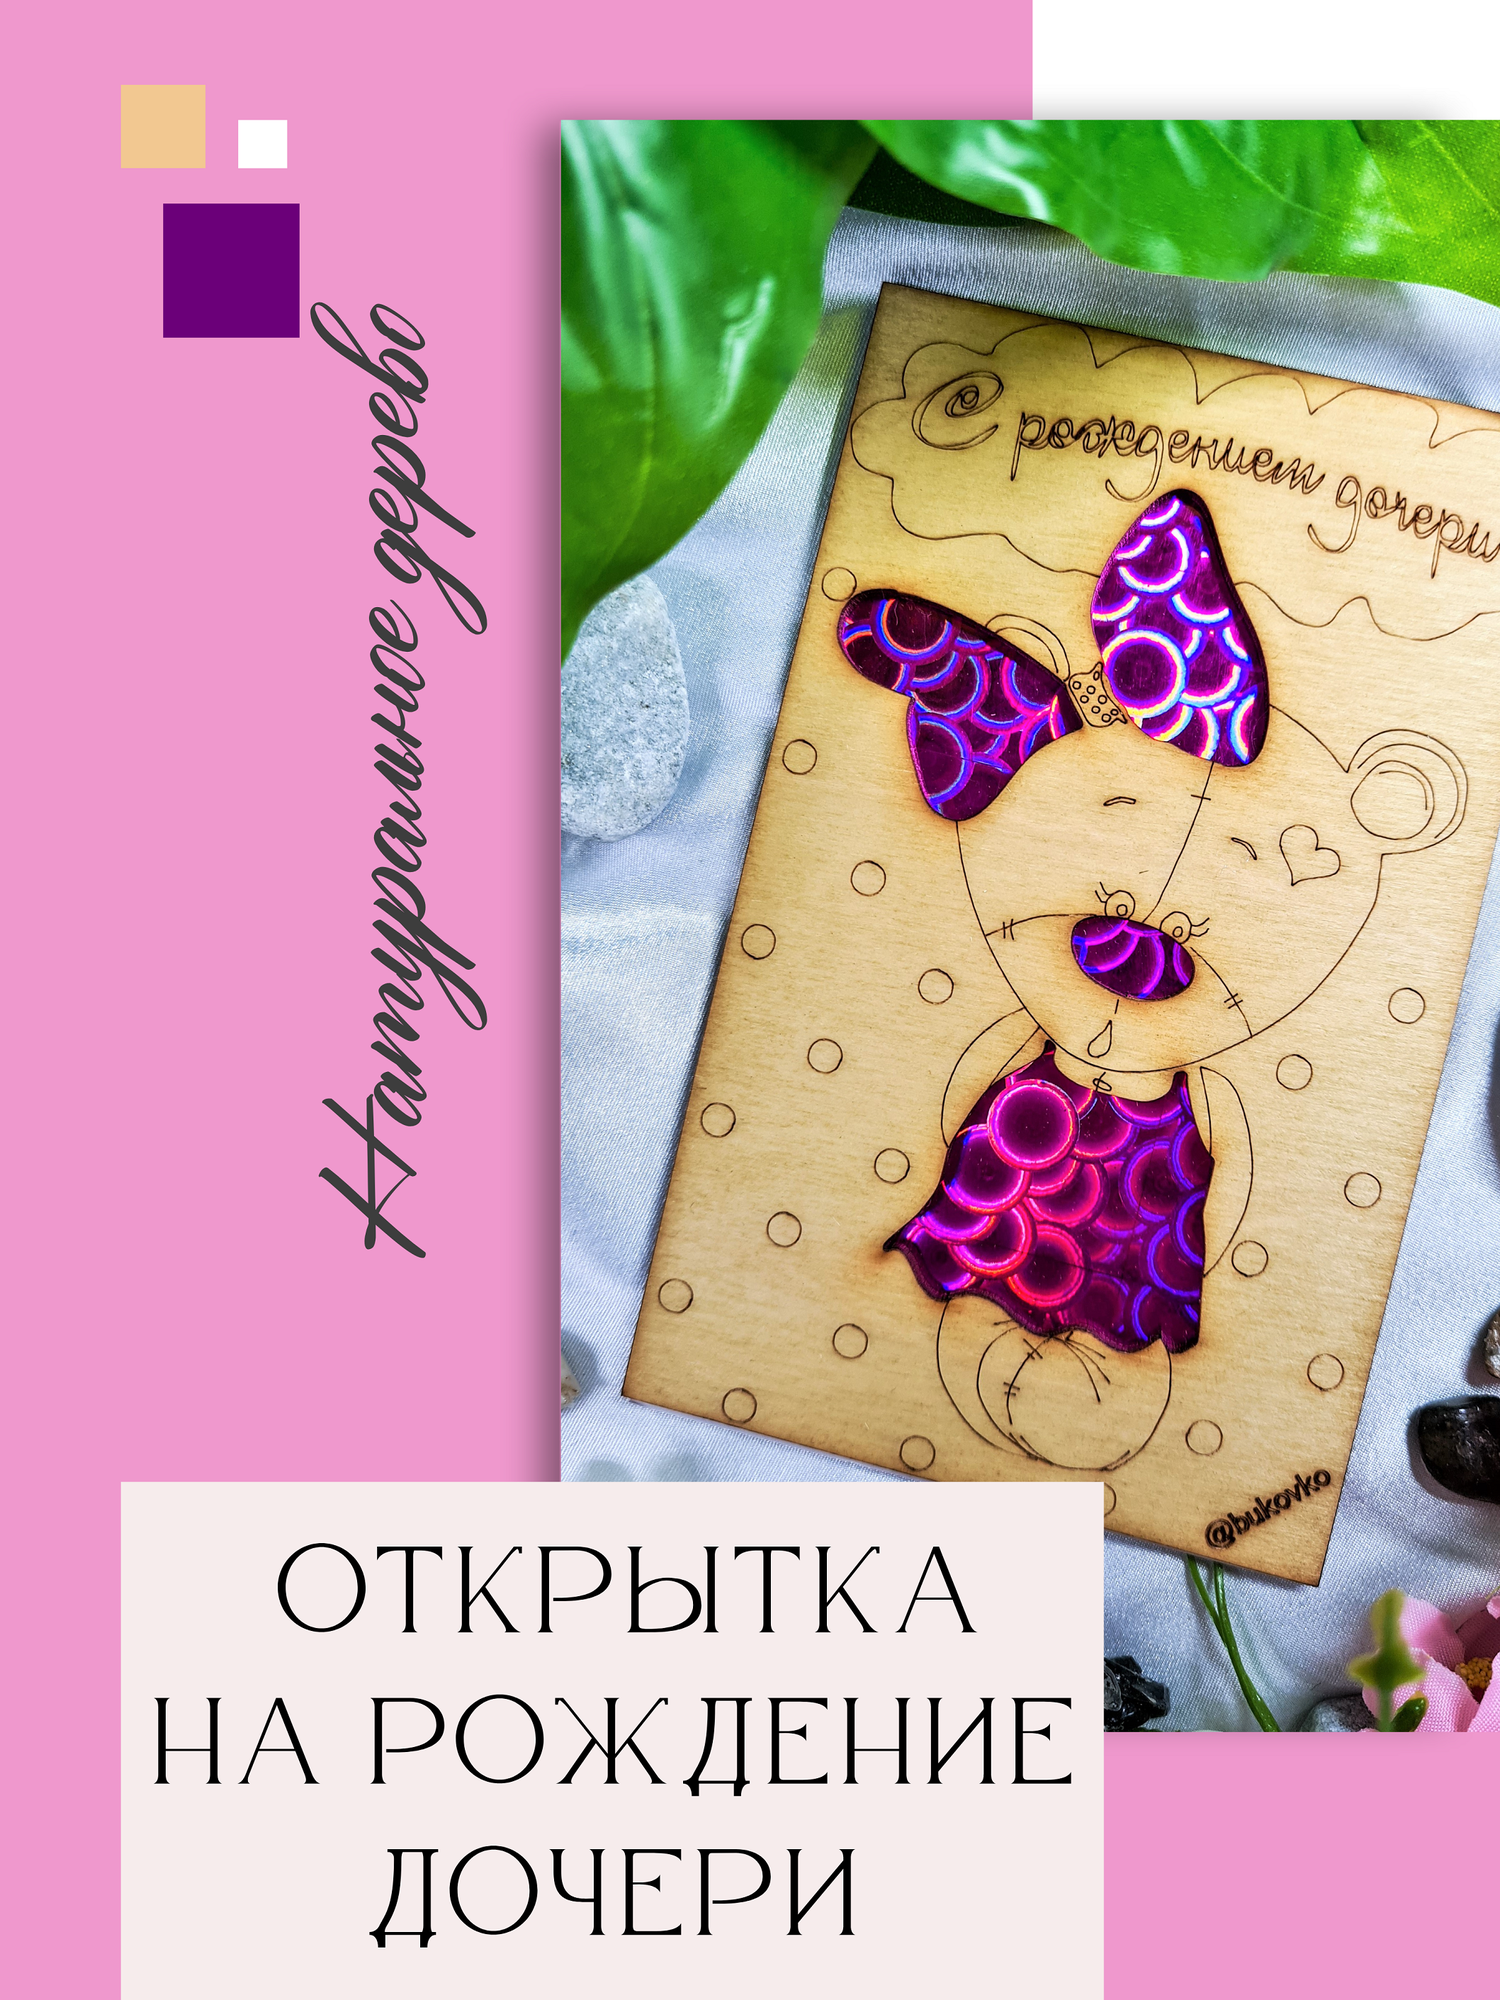 Деревянная открытка ручной работы "С рождением дочери" Bukovko, открытка дочке, открытка новорожденной девочке, открытка малышке на выписку